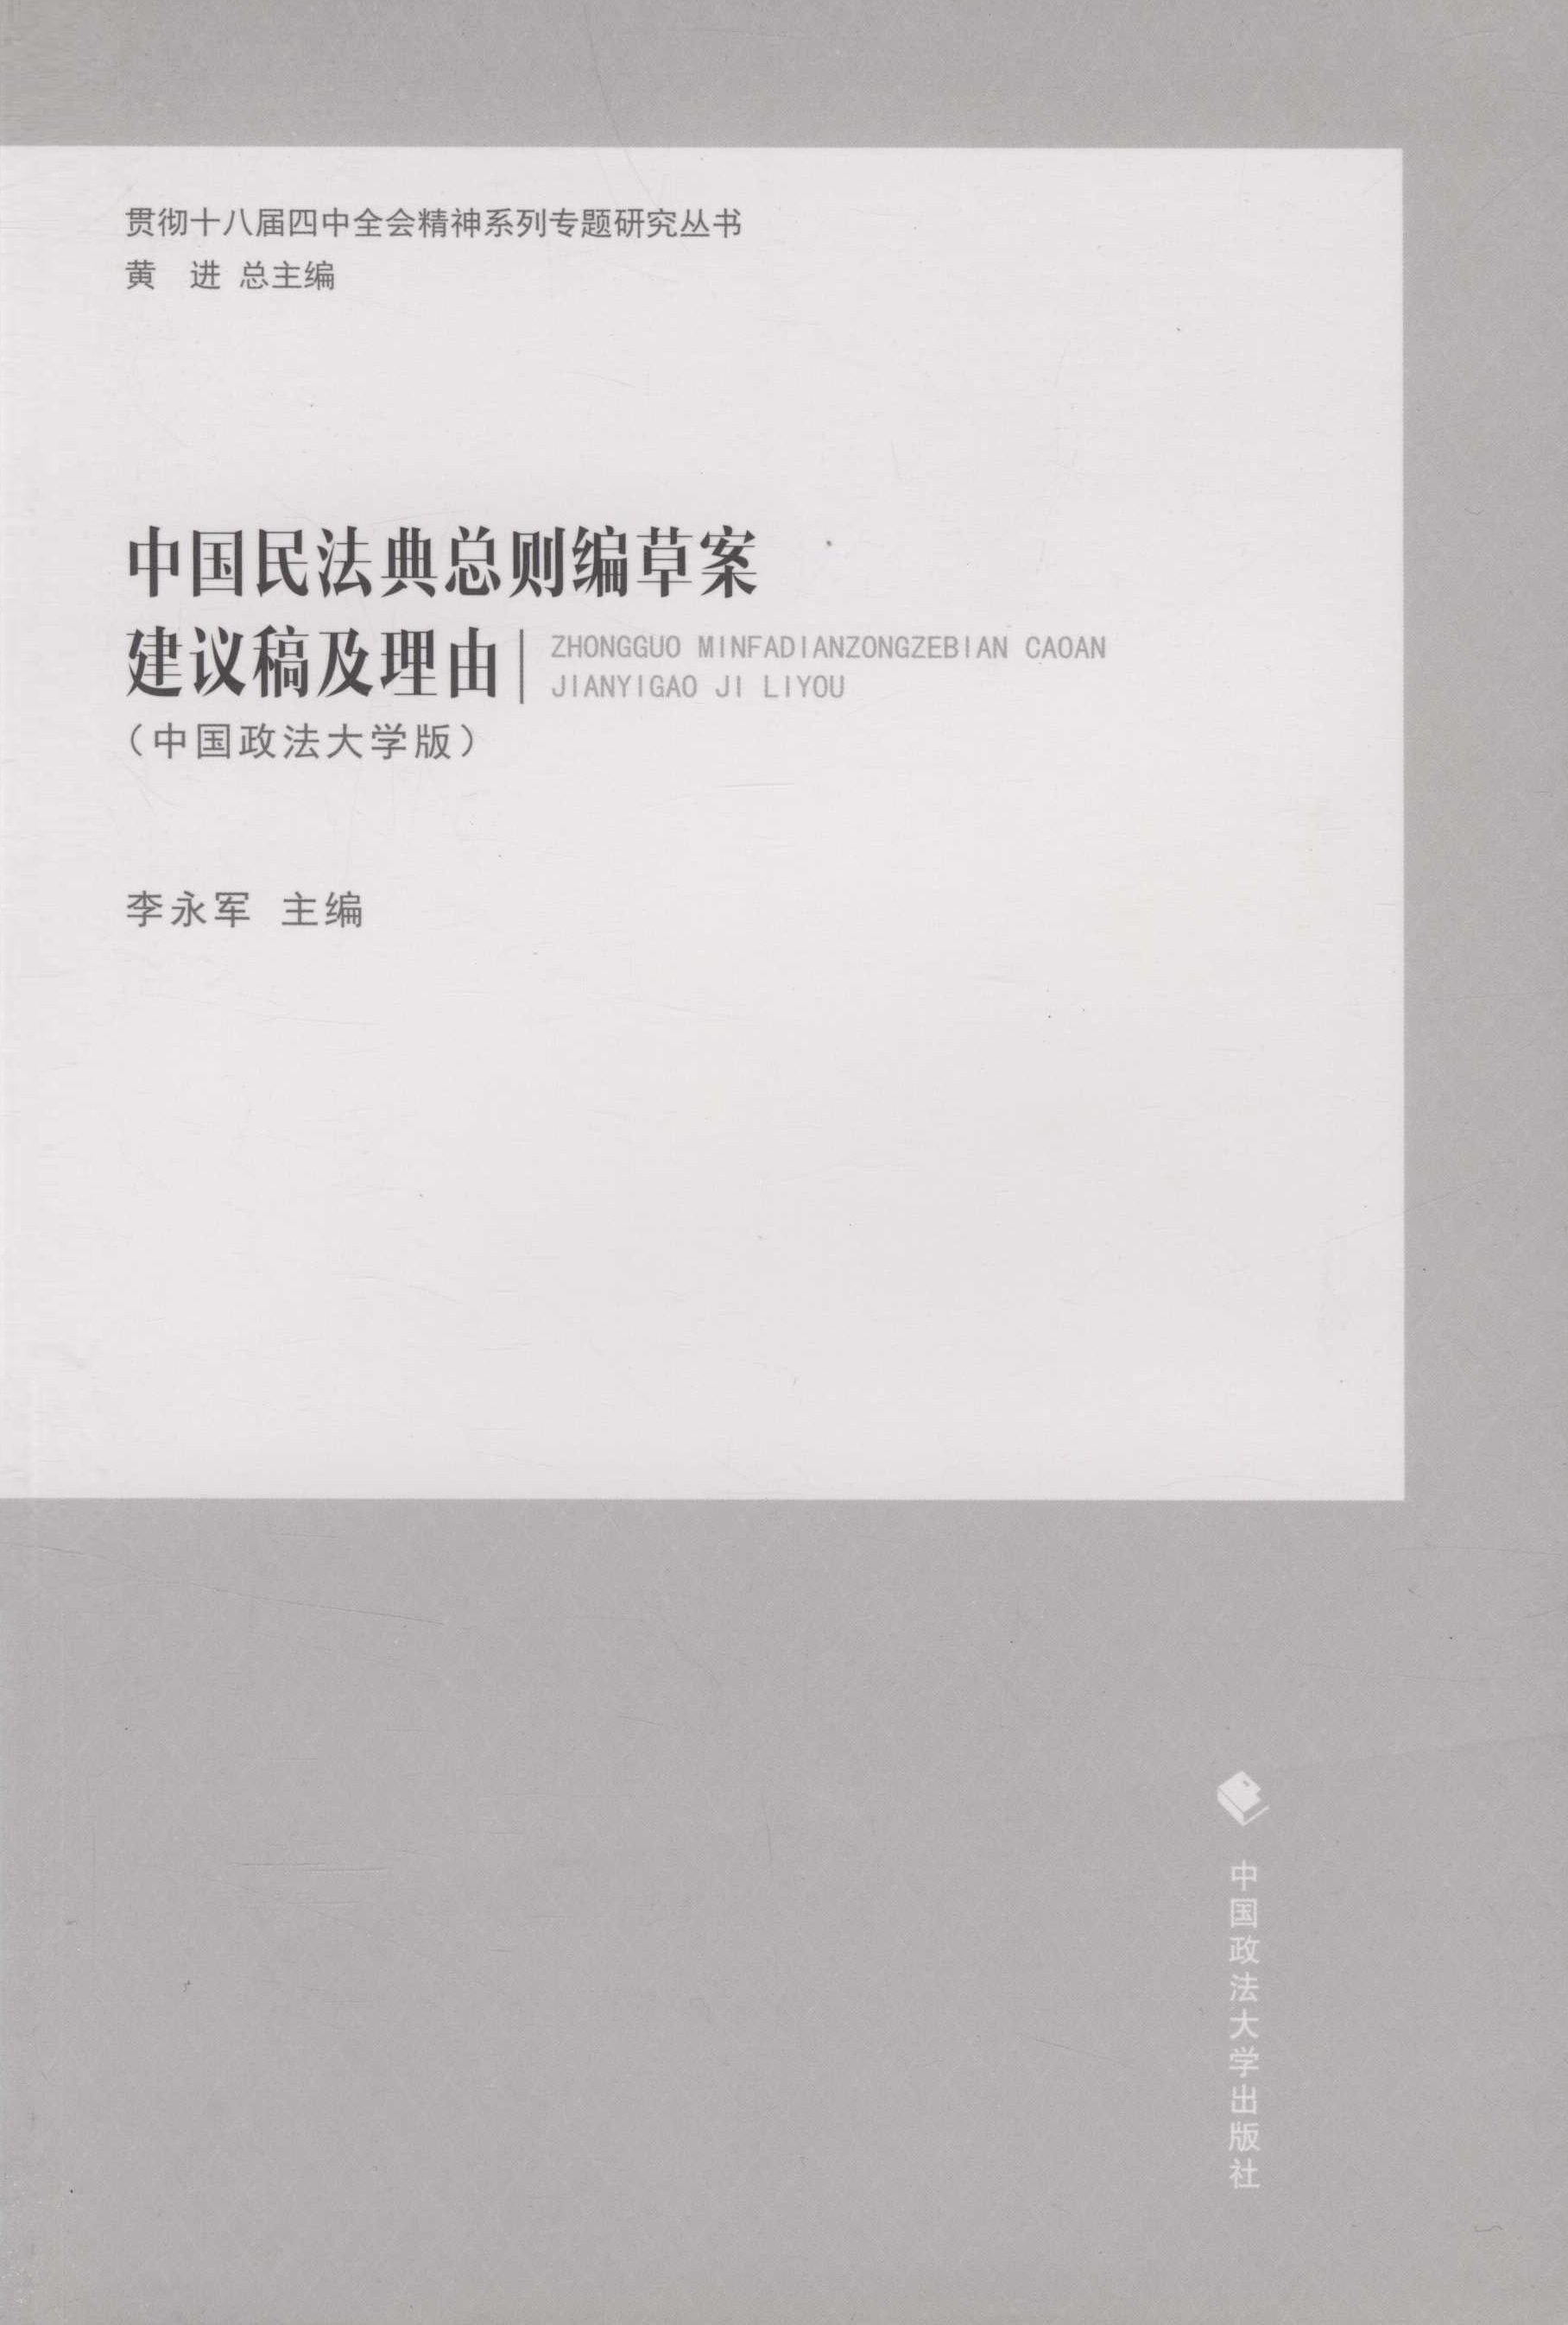 中国民法典总则编草案建议稿及理由